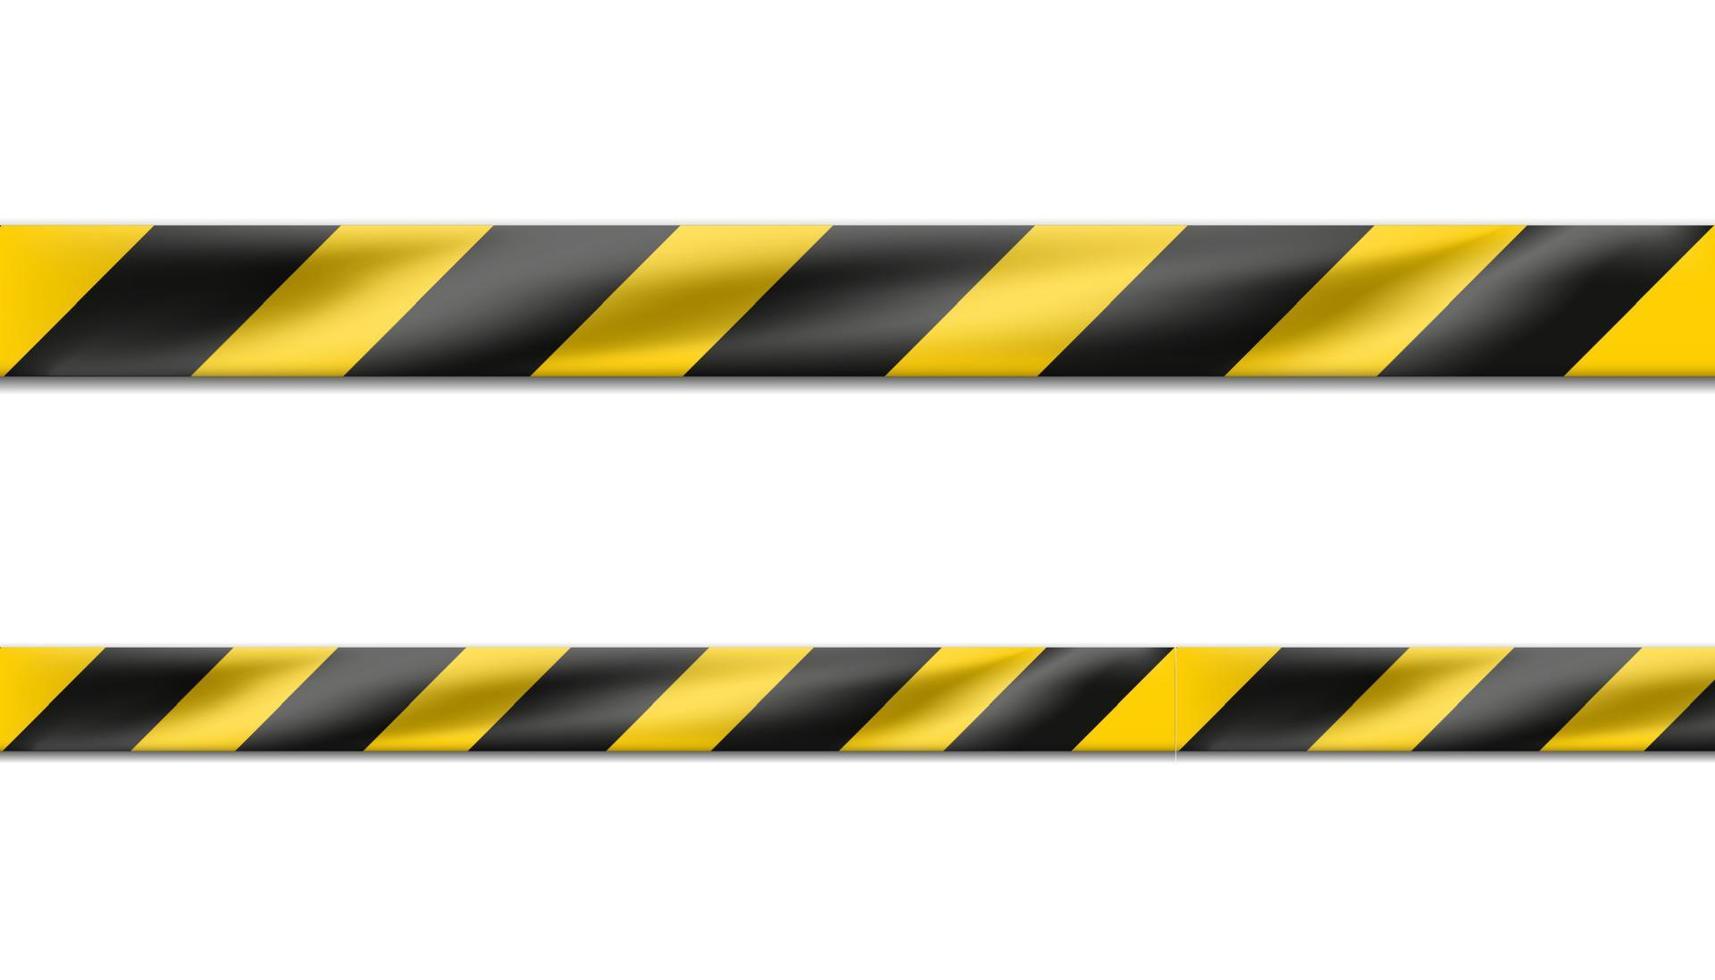 3D realistische Vektorgefahr schwarz-gelb gestreiftes Band, Warnband mit Warnschildern für Tatorte oder Baustellen. isoliert auf weiß. vektor